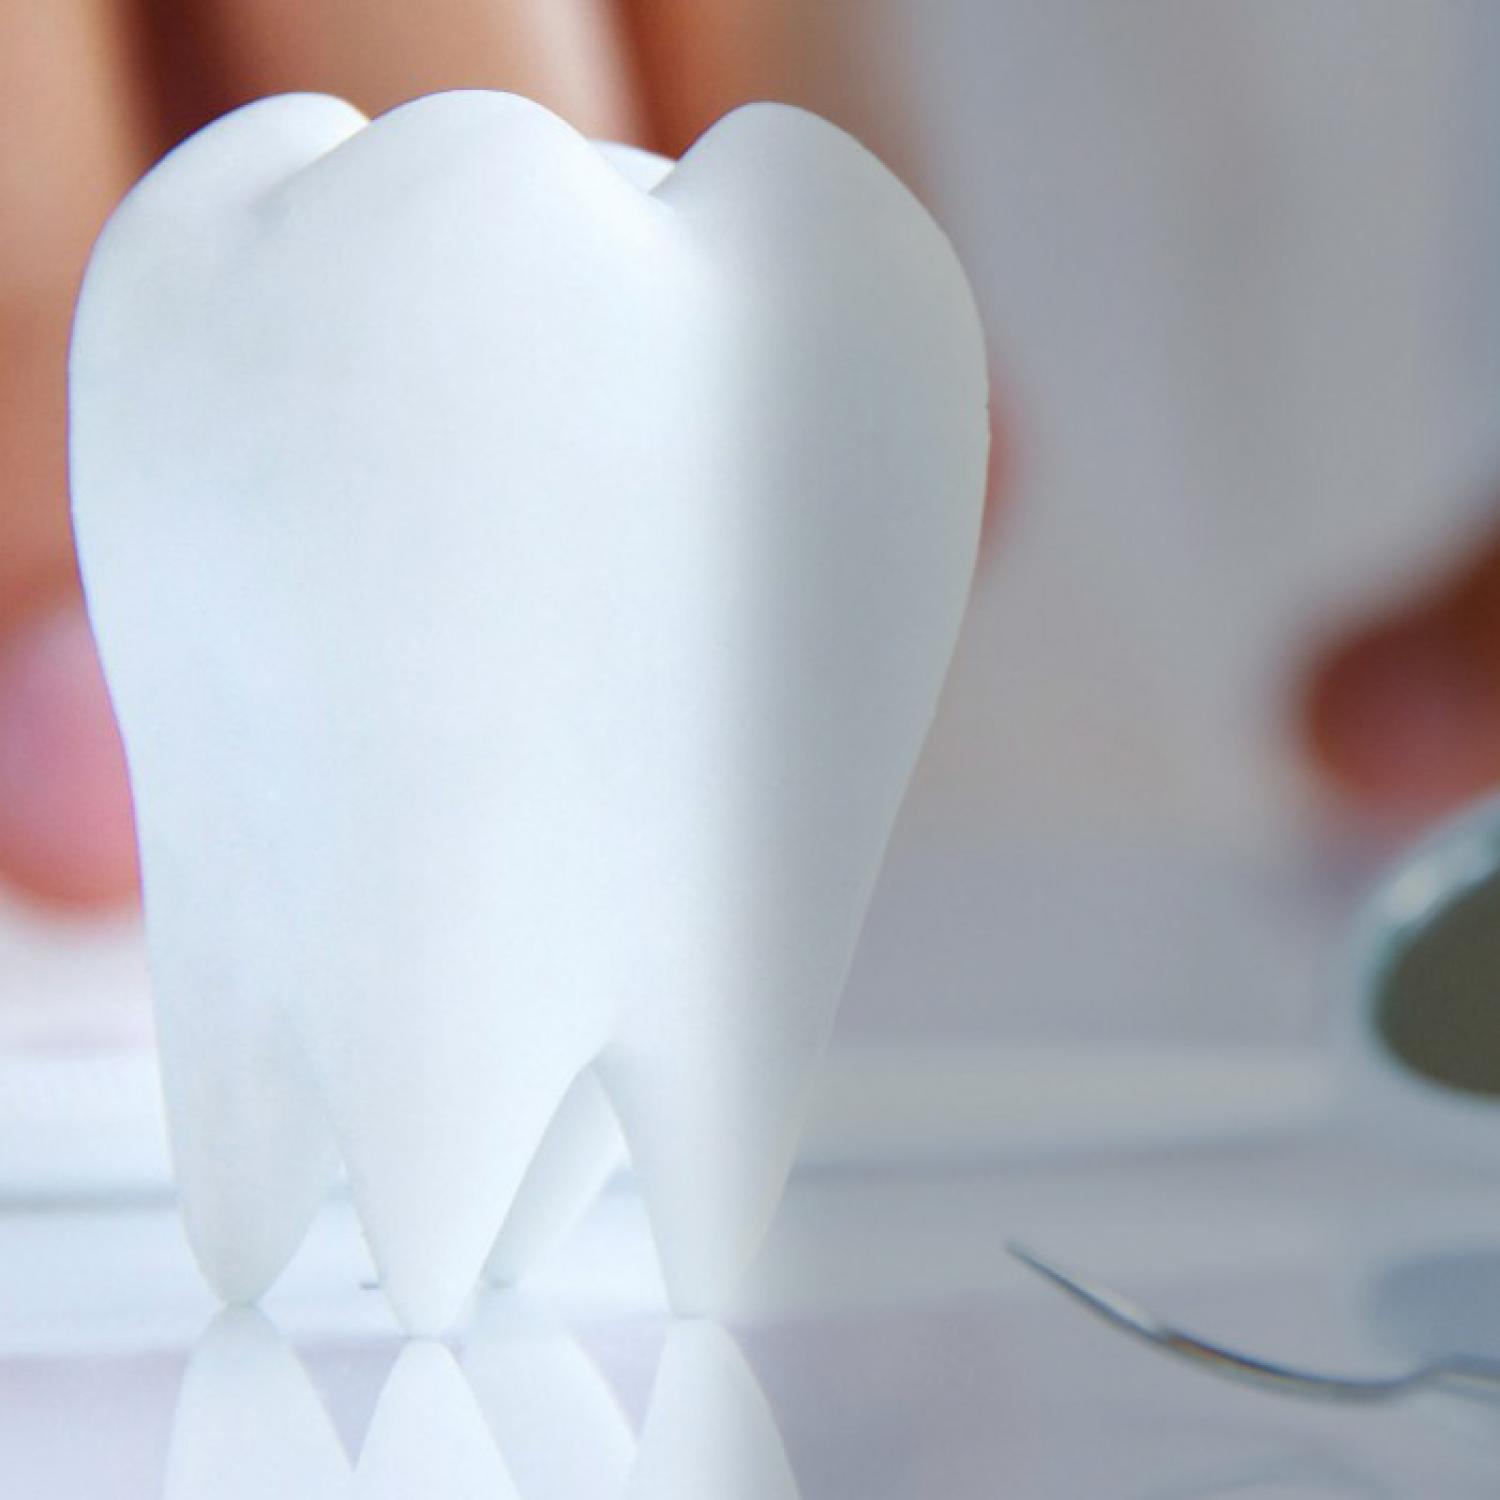 Bembeyaz Dişlere Sahip Olmak İçin İzlemeniz Gereken Adımlar - Batı Ortodonti